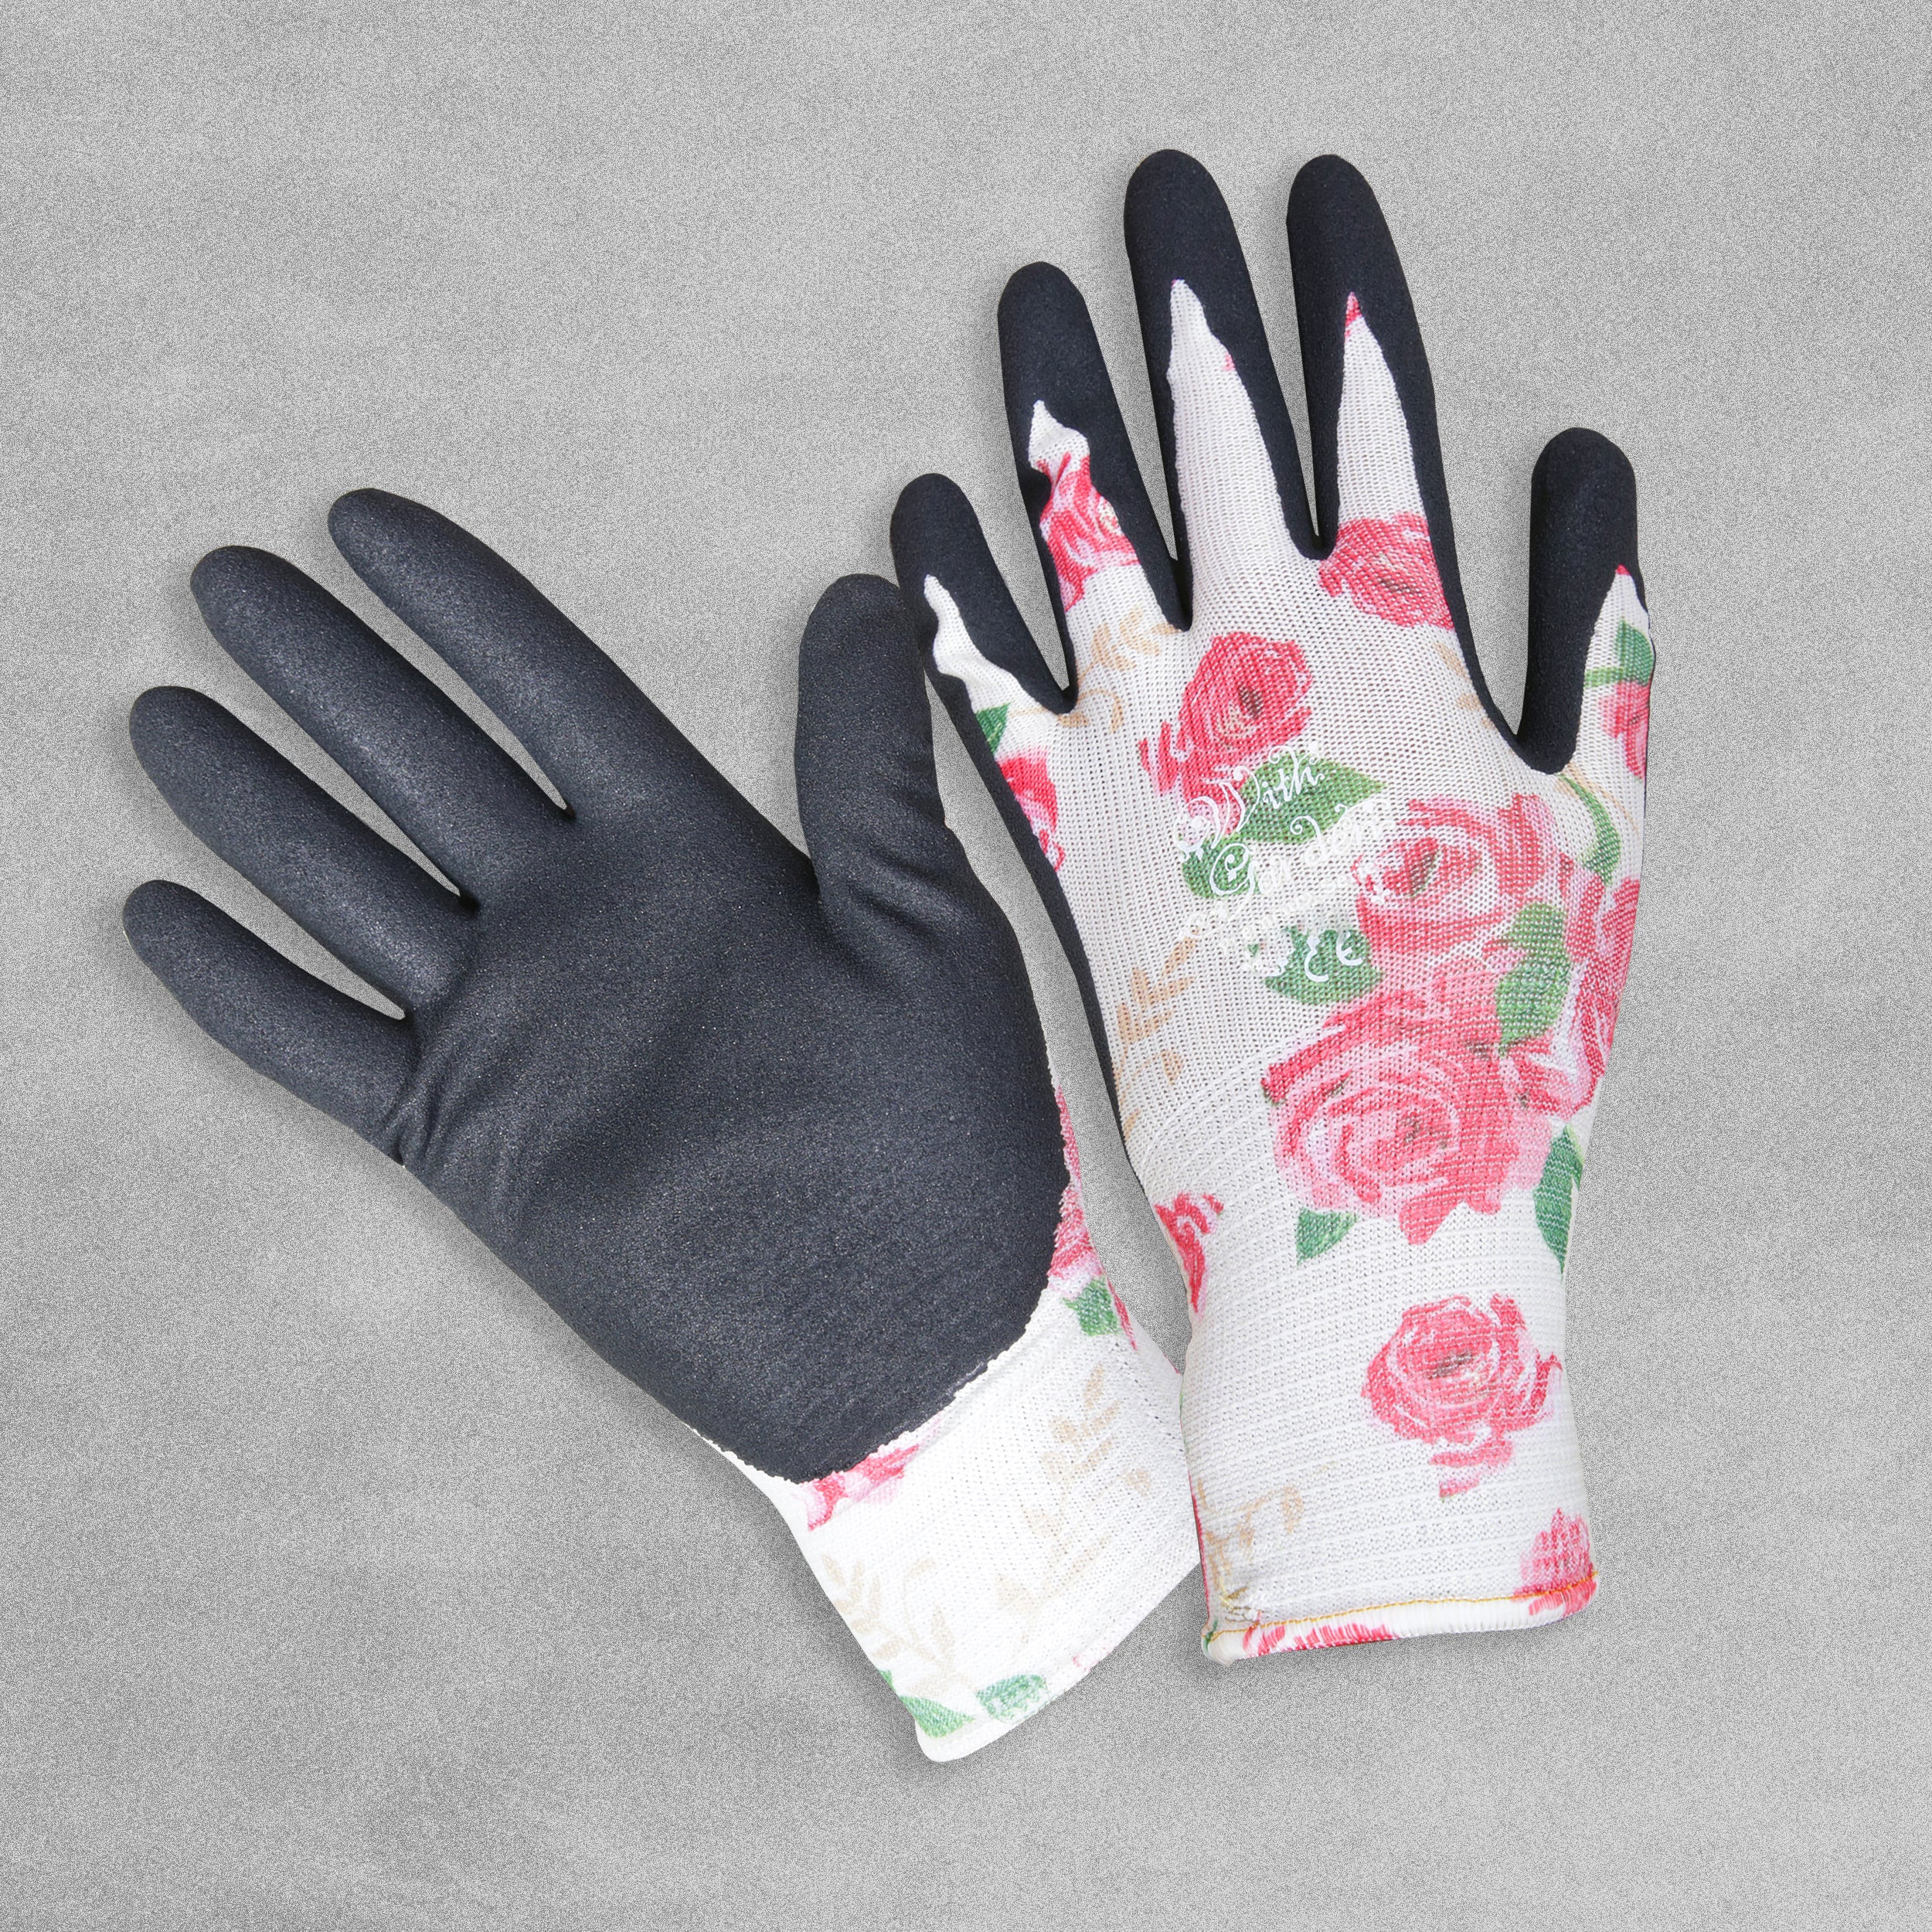 With Garden Premium Luminus Garden gloves - Rose design